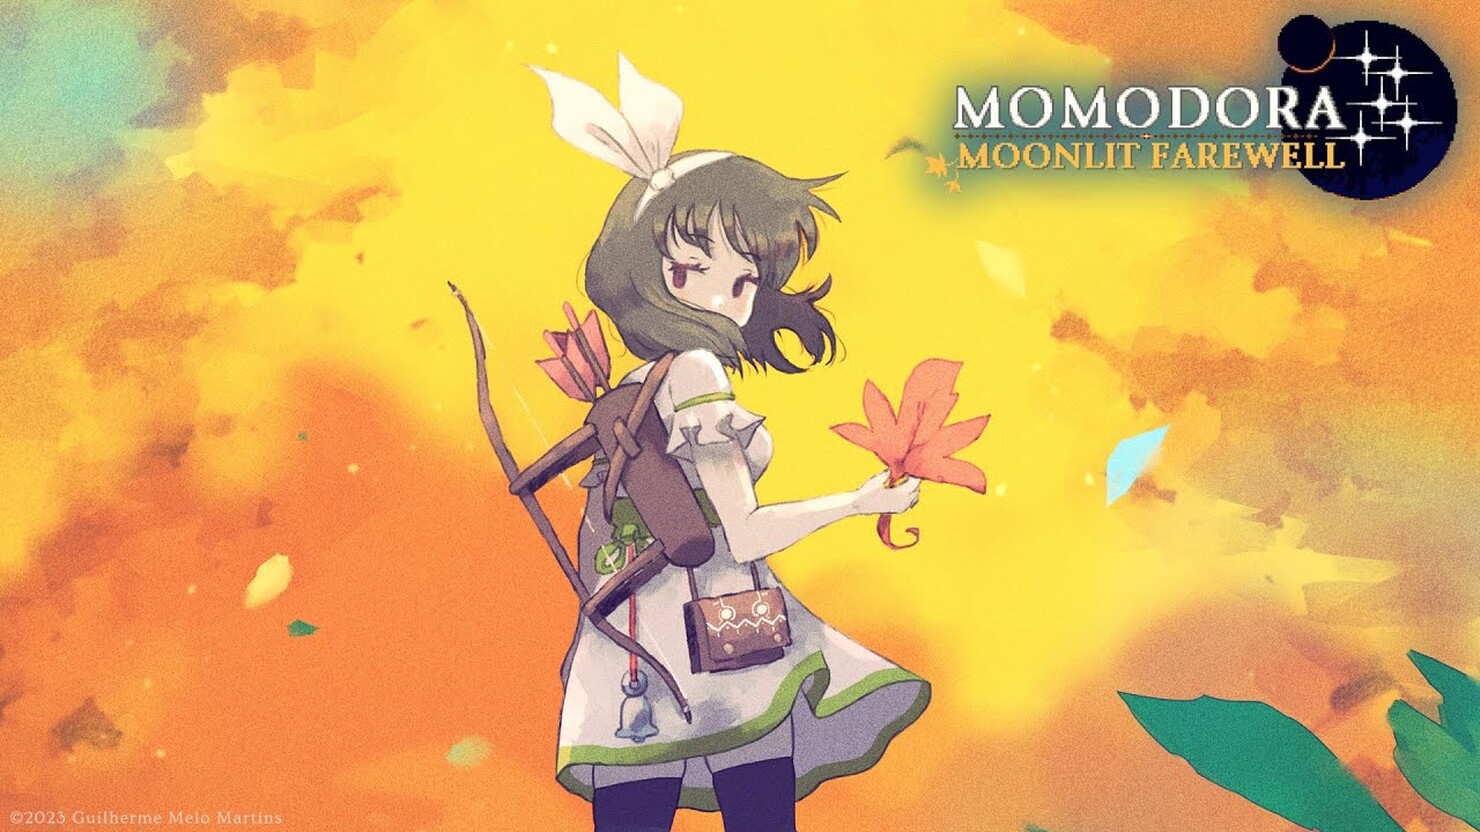 Momodora: Moonlit Farewell #11 (Купель перерождения)